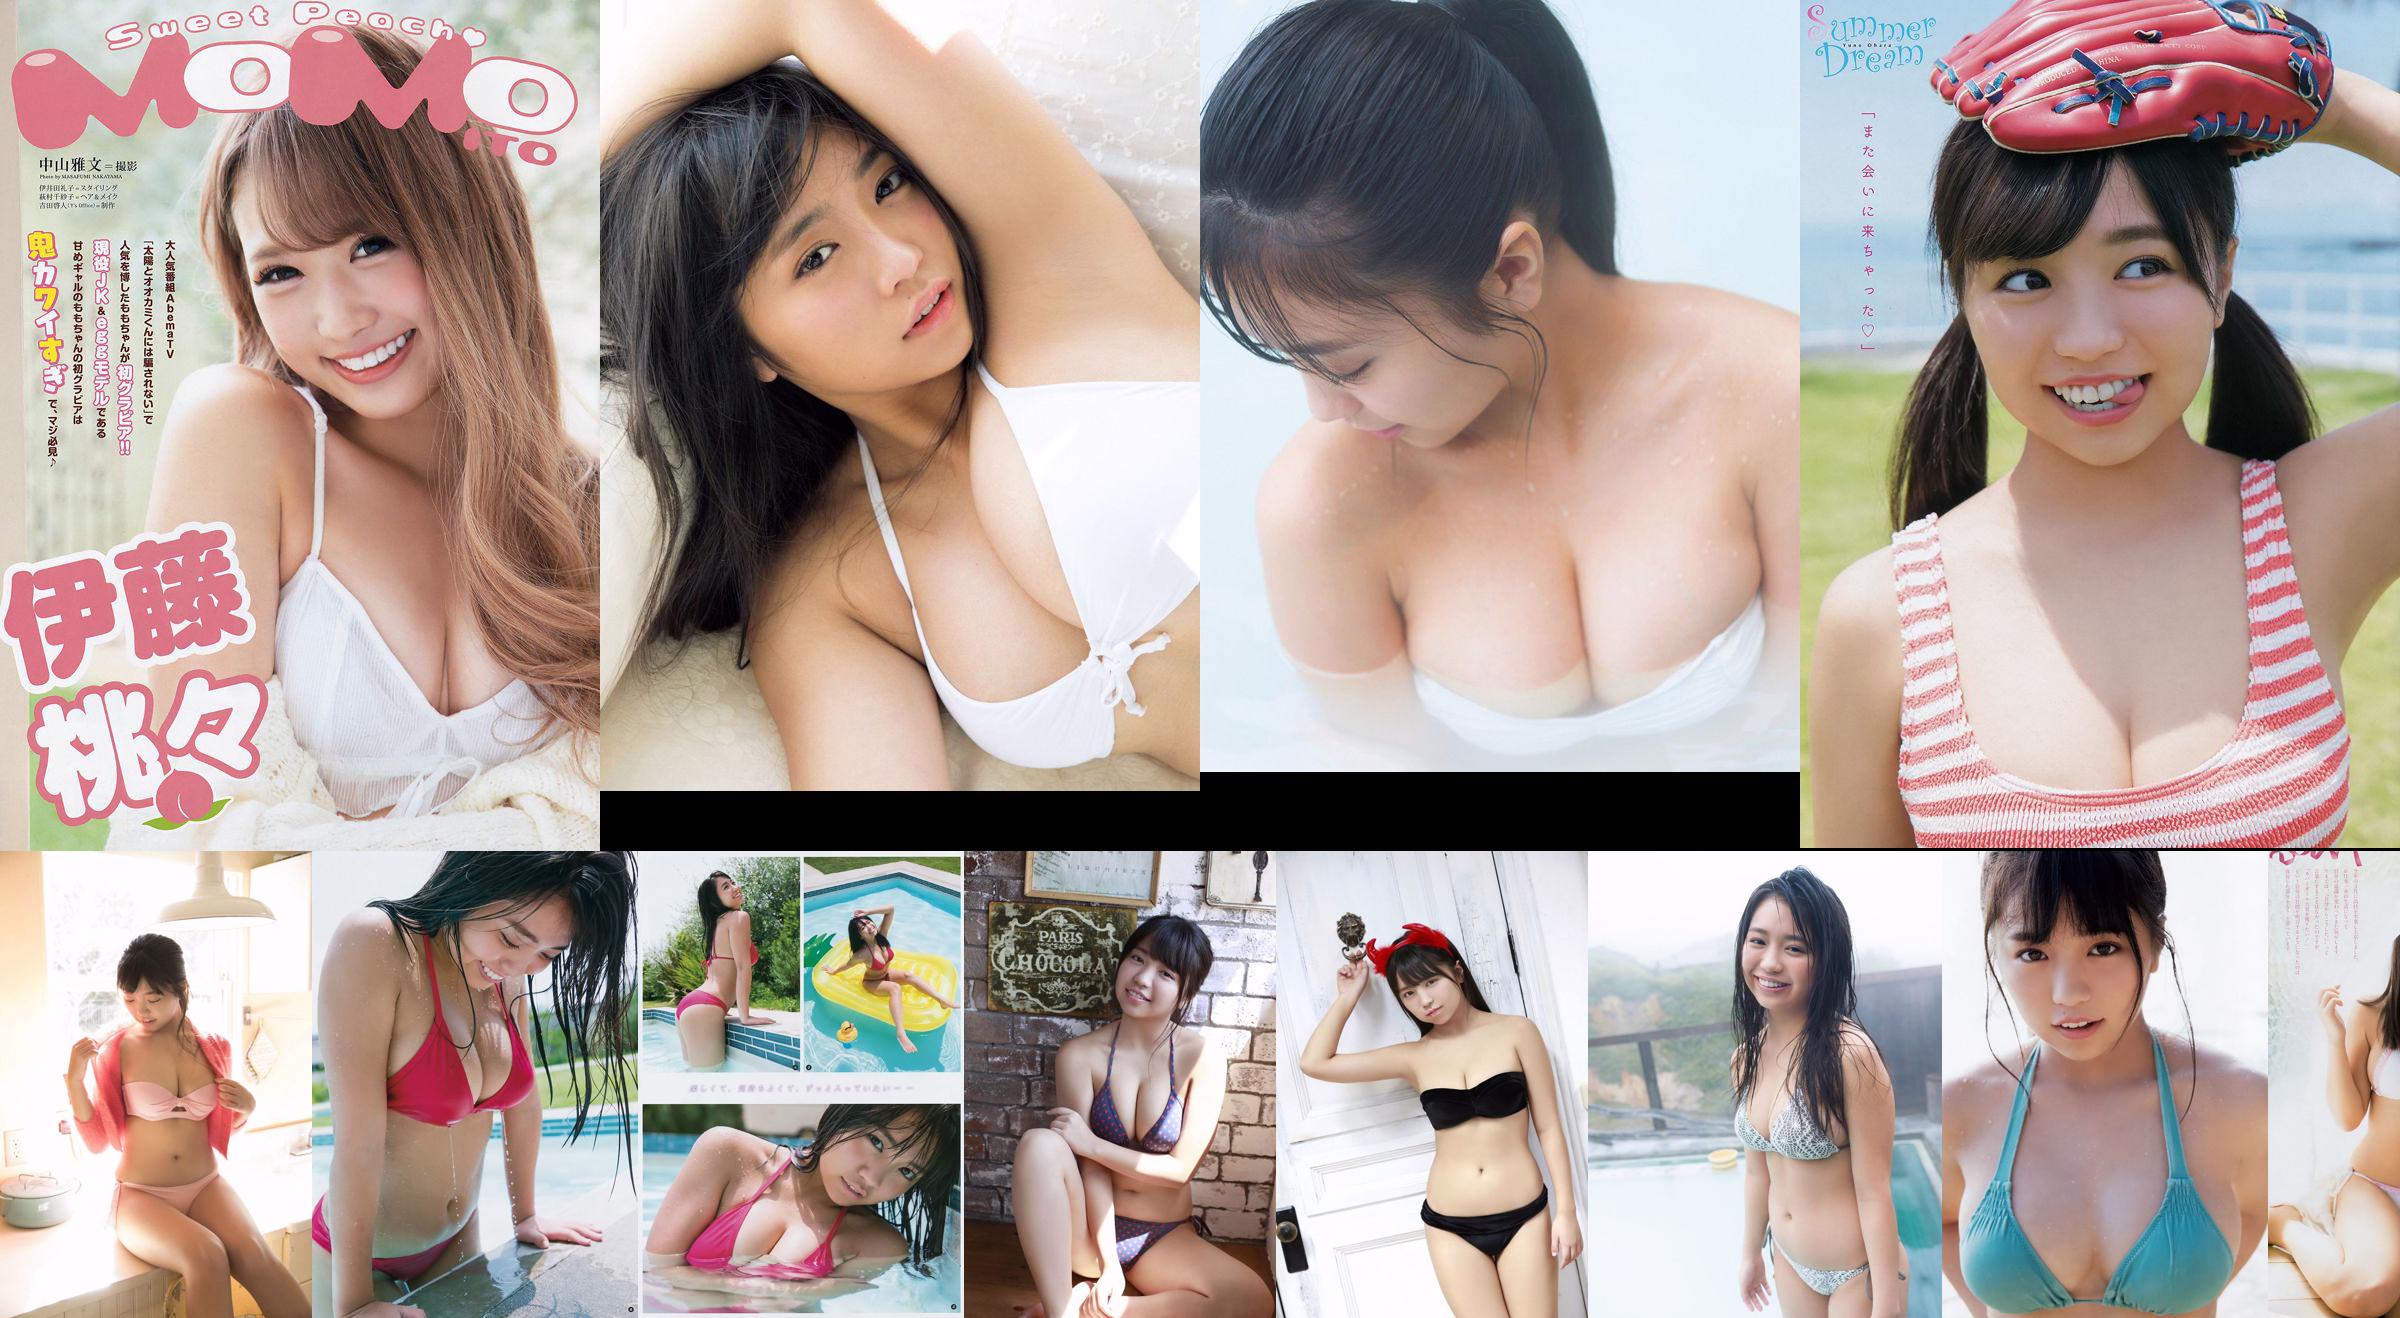 [Young Magazine] Yuno Ohara No.01 Photo Magazine in 2018 No.912957 Pagina 5